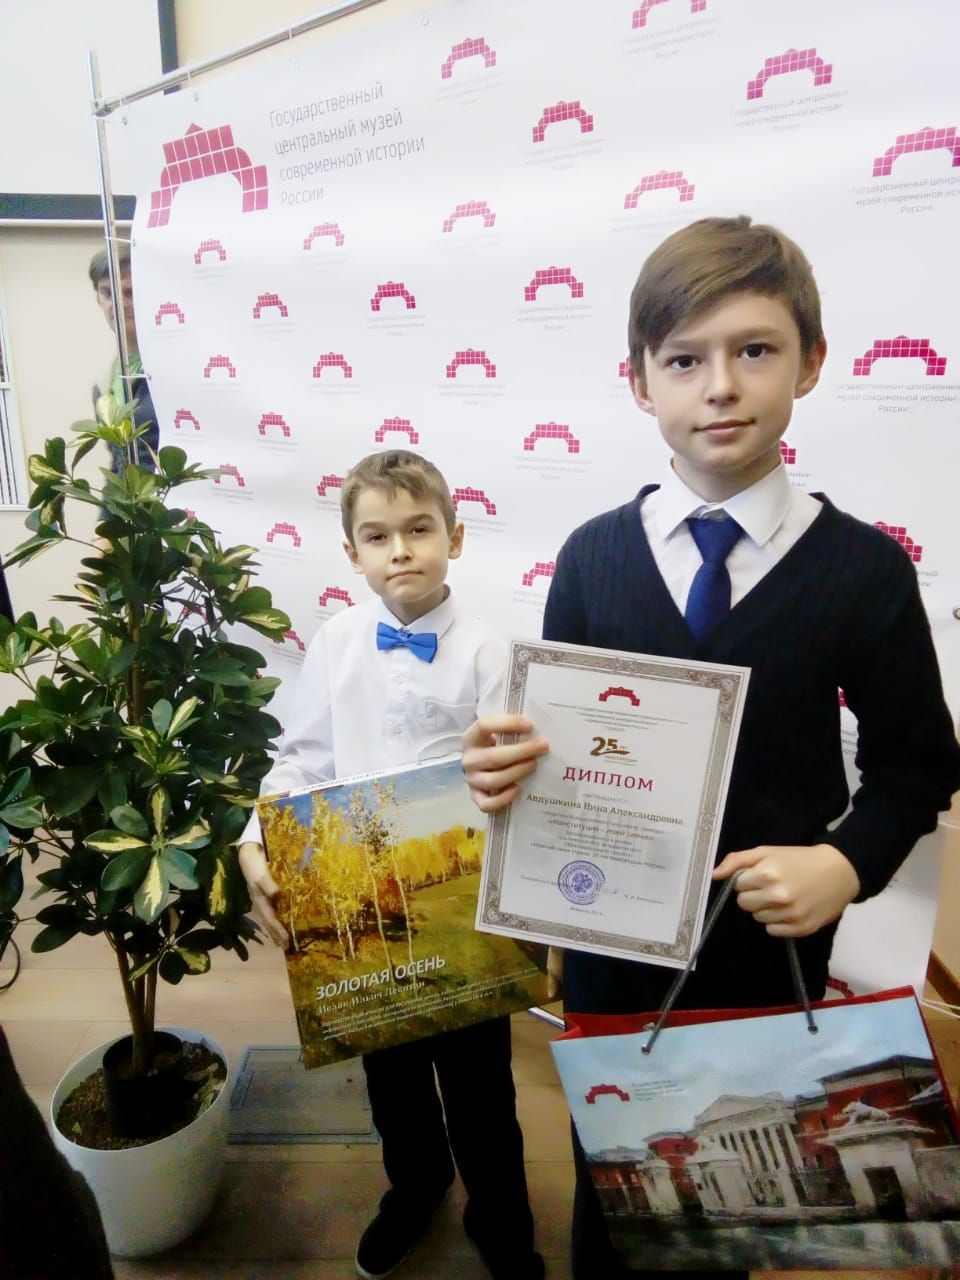 Нурлатцы участвуют в церемонии награждения в Москве